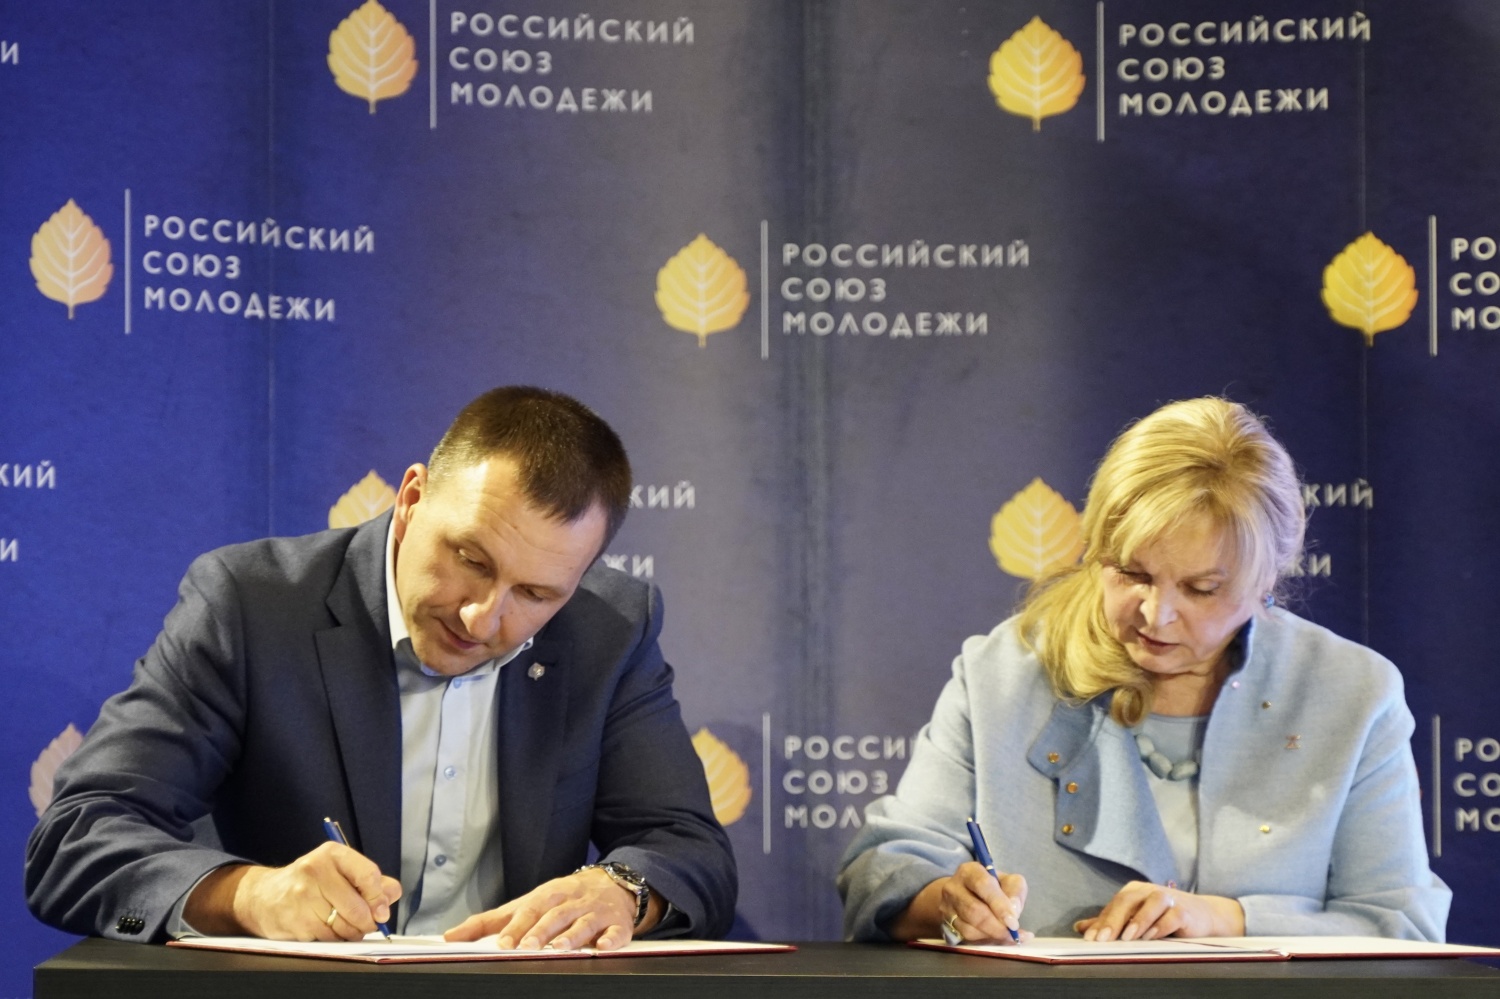 Глава Центризбиркома России Элла Памфилова и Председатель РСМ Павел Красноруцкий подписали соглашение о сотрудничестве